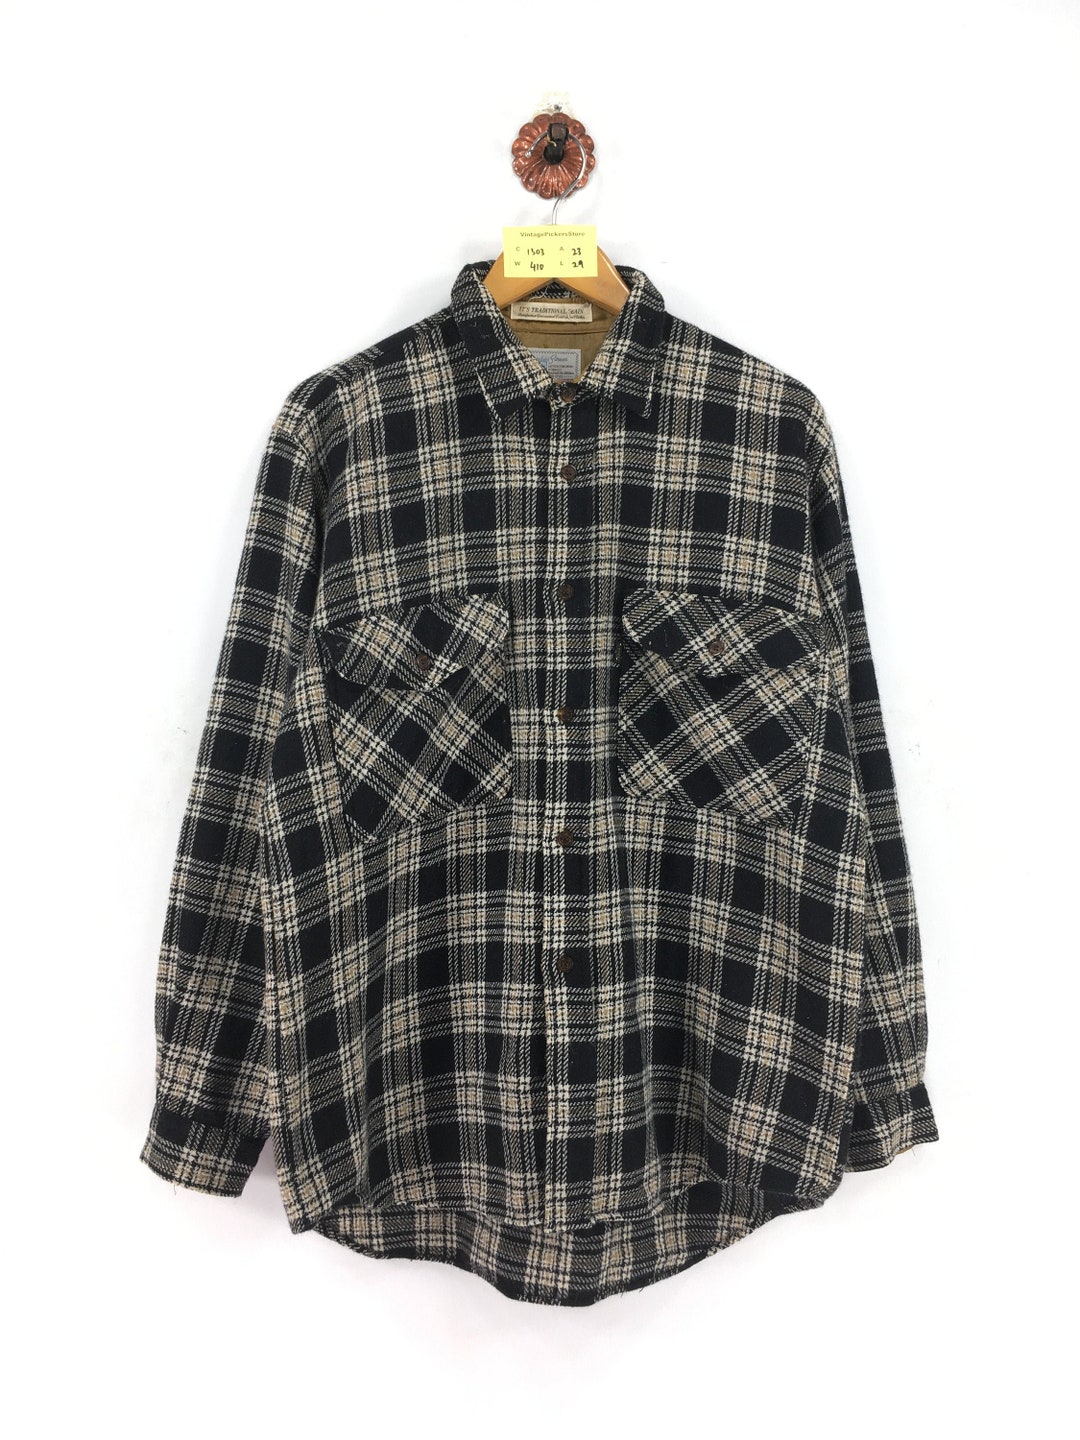 Vintage 90s BIG JOHN Plaid Checkered Flannel Shirt Unisex - Etsy